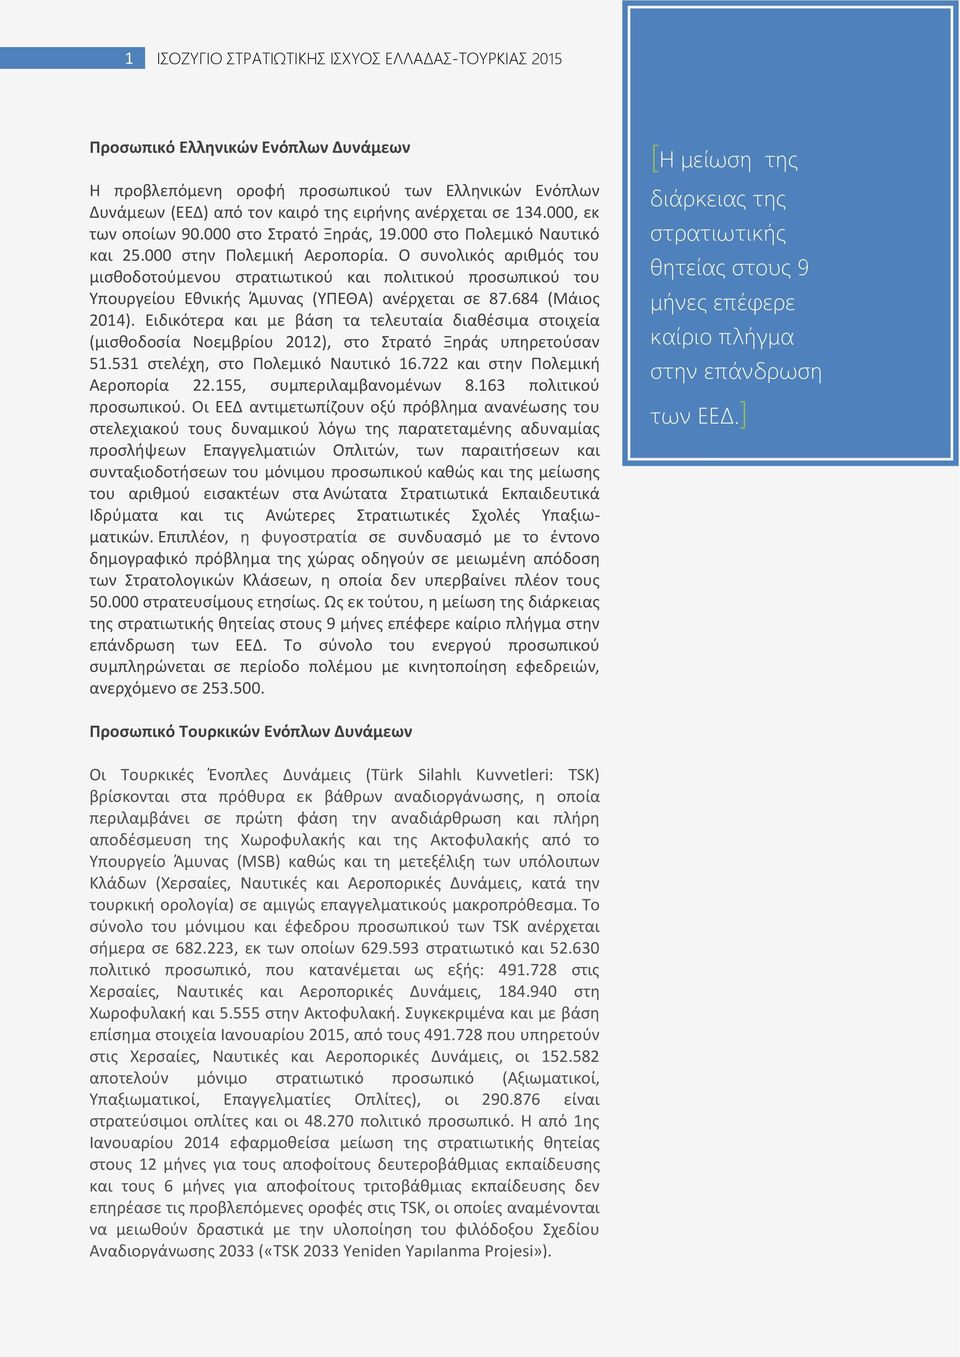 Ο ςυνολικόσ αρικμόσ του μιςκοδοτοφμενου ςτρατιωτικοφ και πολιτικοφ προςωπικοφ του Υπουργείου Εκνικισ Άμυνασ (ΥΡΕΘΑ) ανζρχεται ςε 87.684 (Μάιοσ 2014).